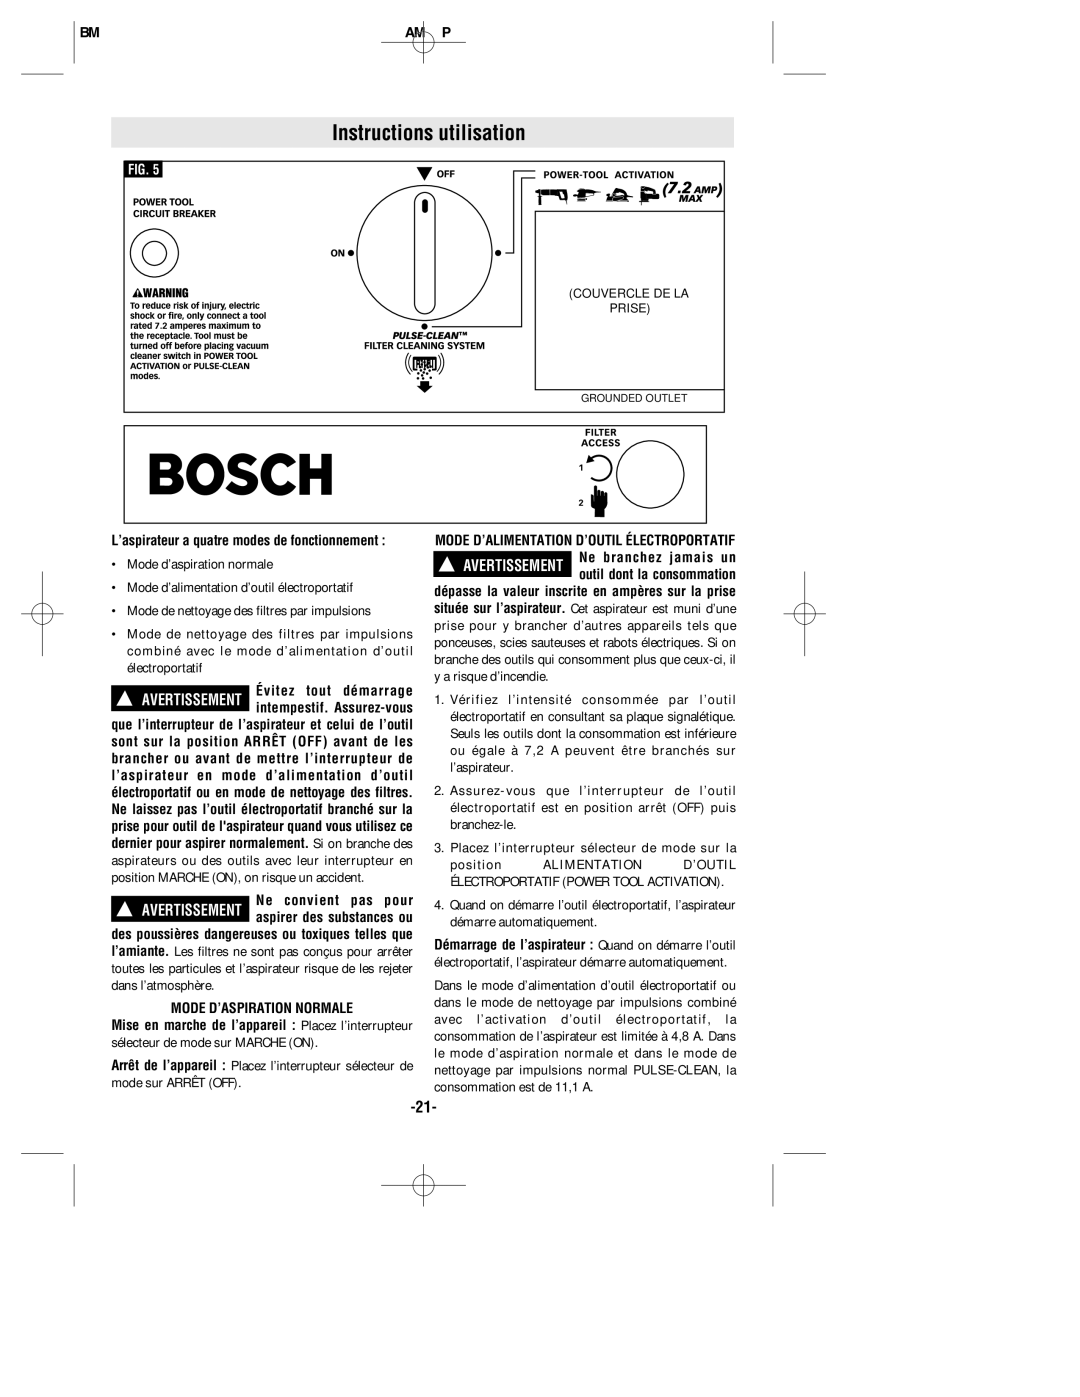 Bosch Appliances 3931 manual Instructions utilisation, Ne convient pas pour, Mode D’ASPIRATION Normale 